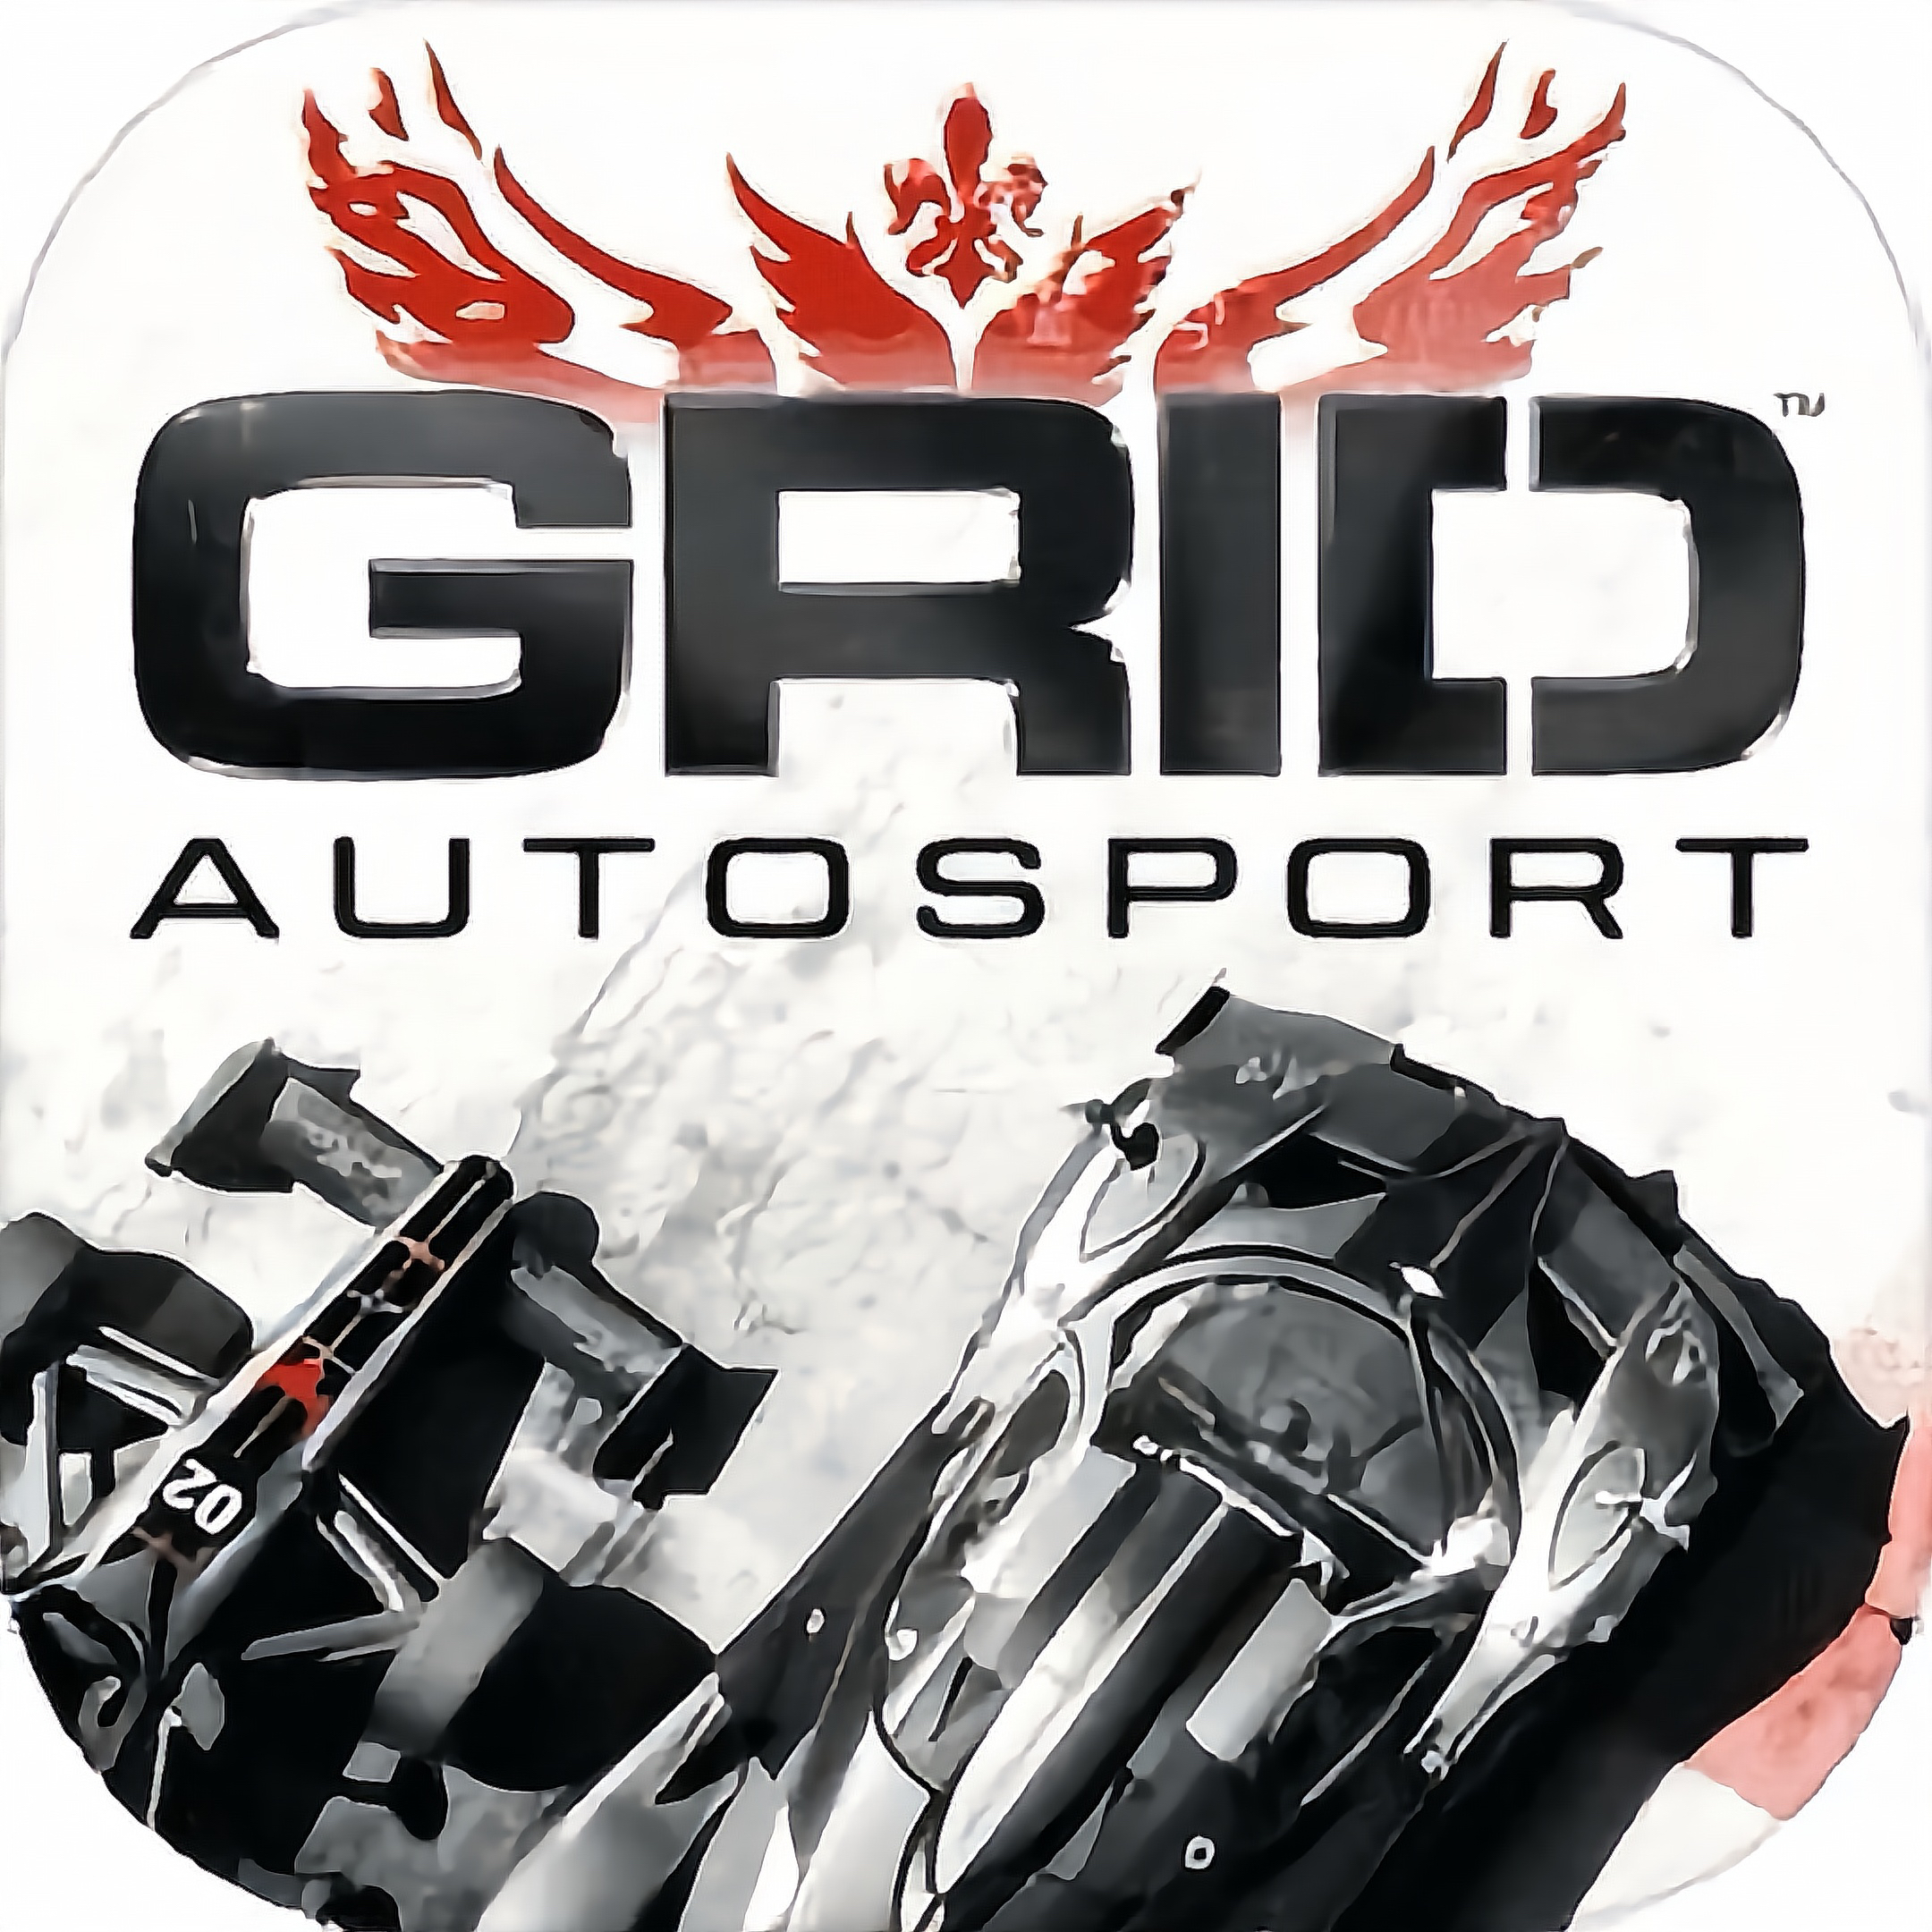 超级房车赛GRIDᵀᴹ Autosport 全DLC中文完整版/苹果/平板通用